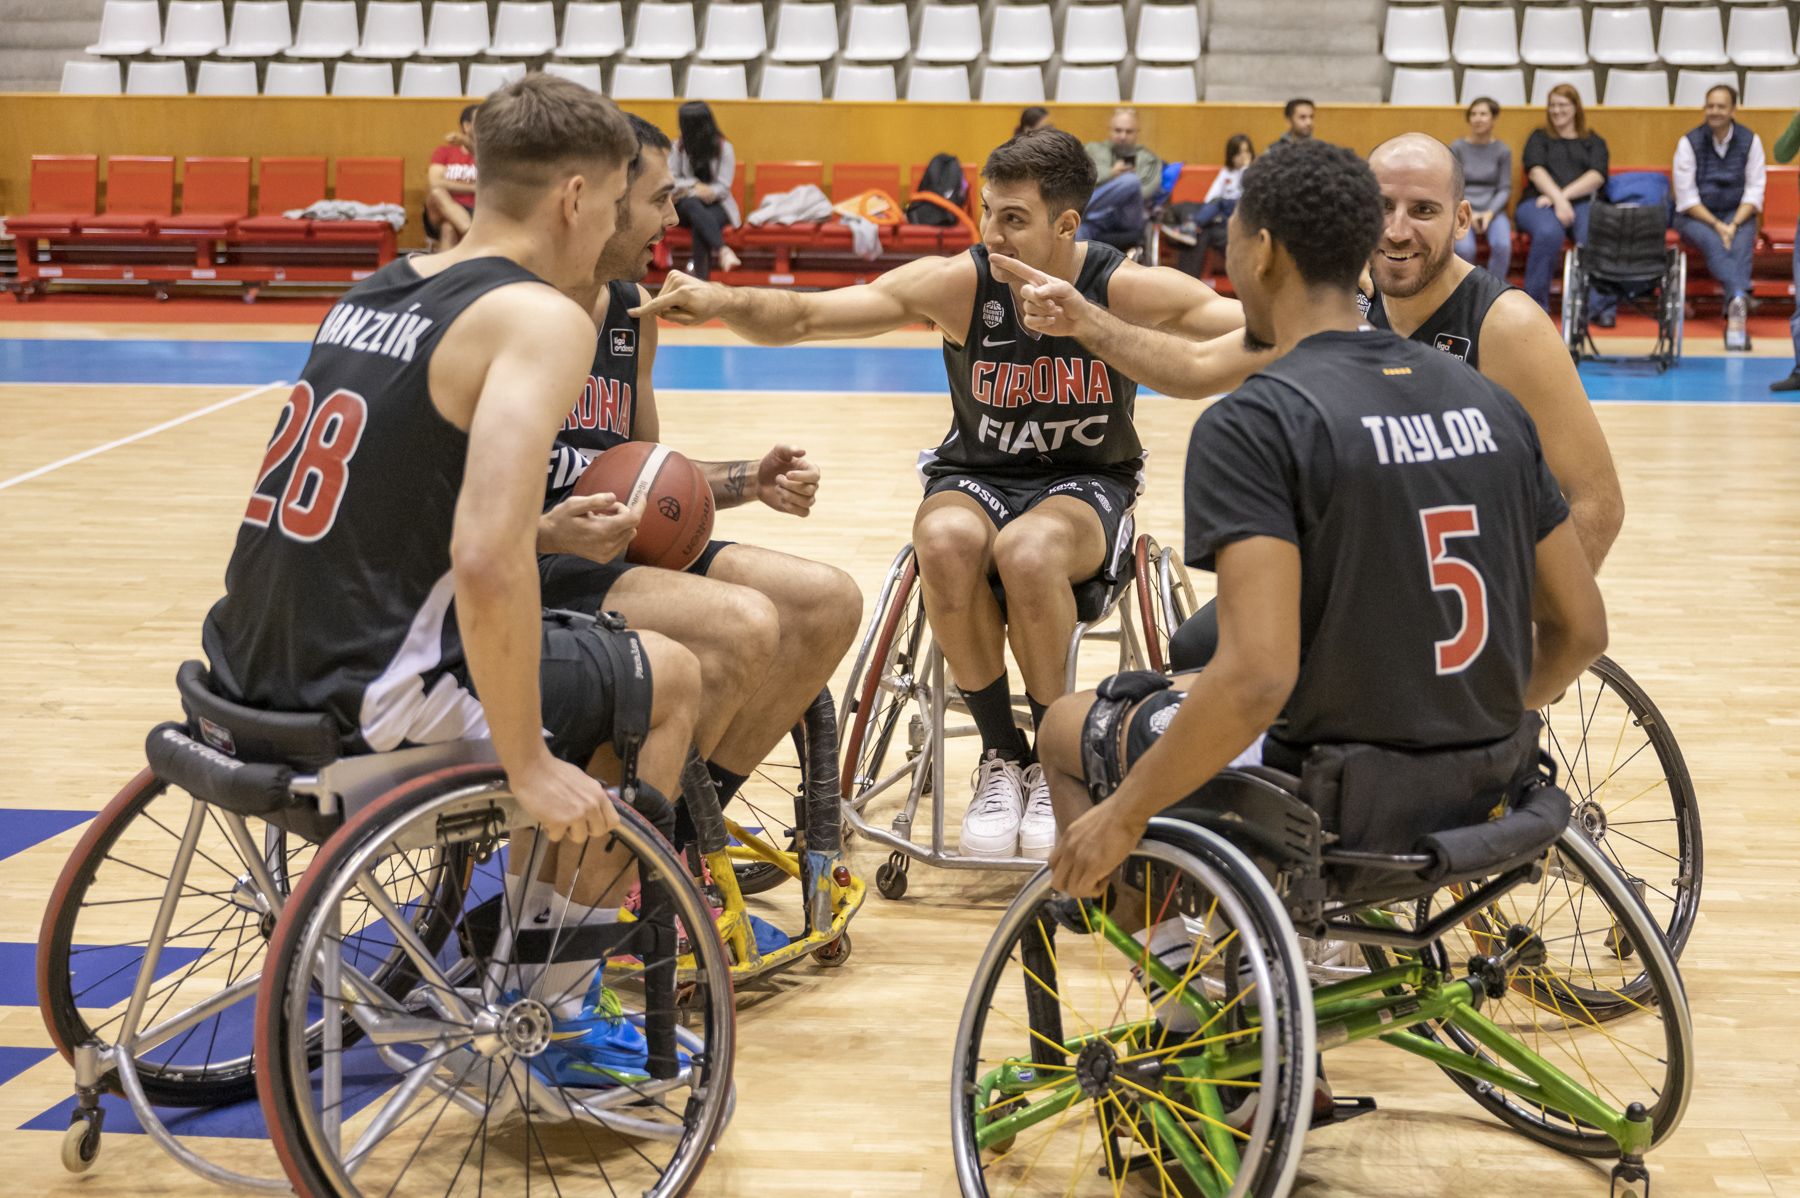 Les estrelles del Girona a l’ACB descobreixen el bàsquet en cadira de rodes